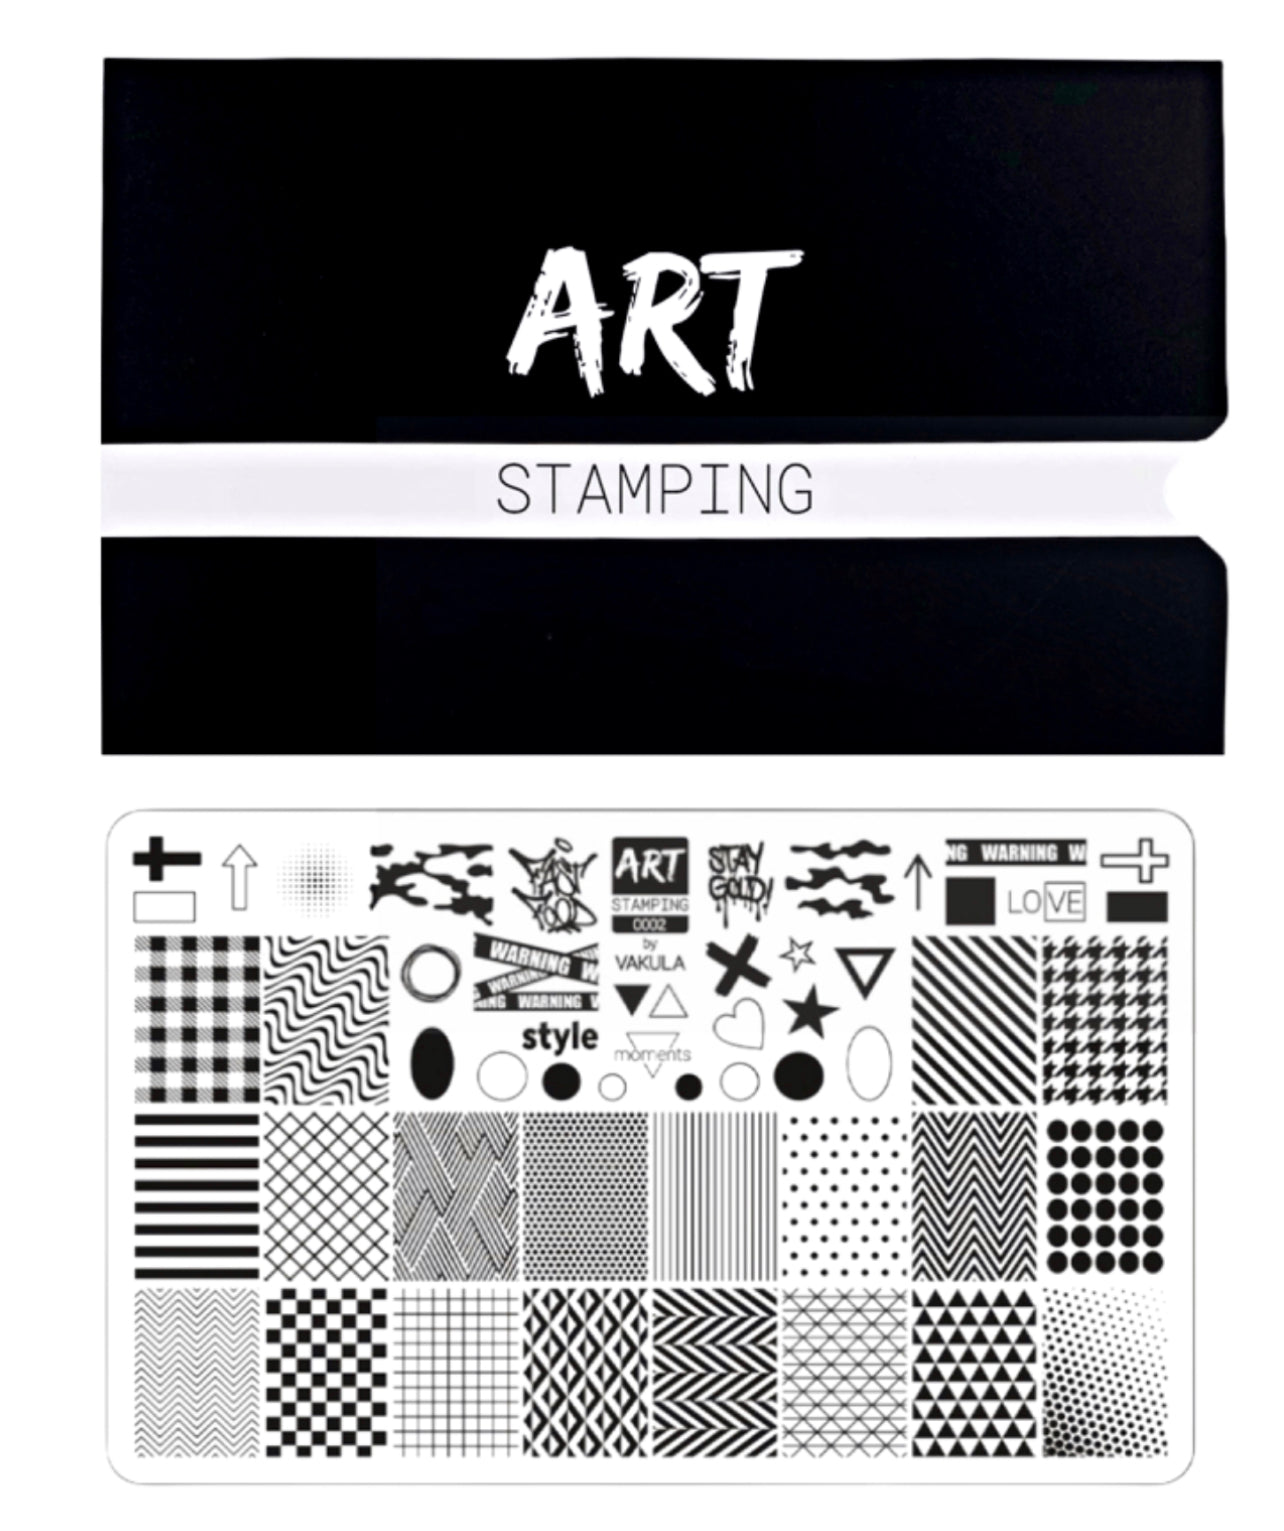 ART stamping 0002